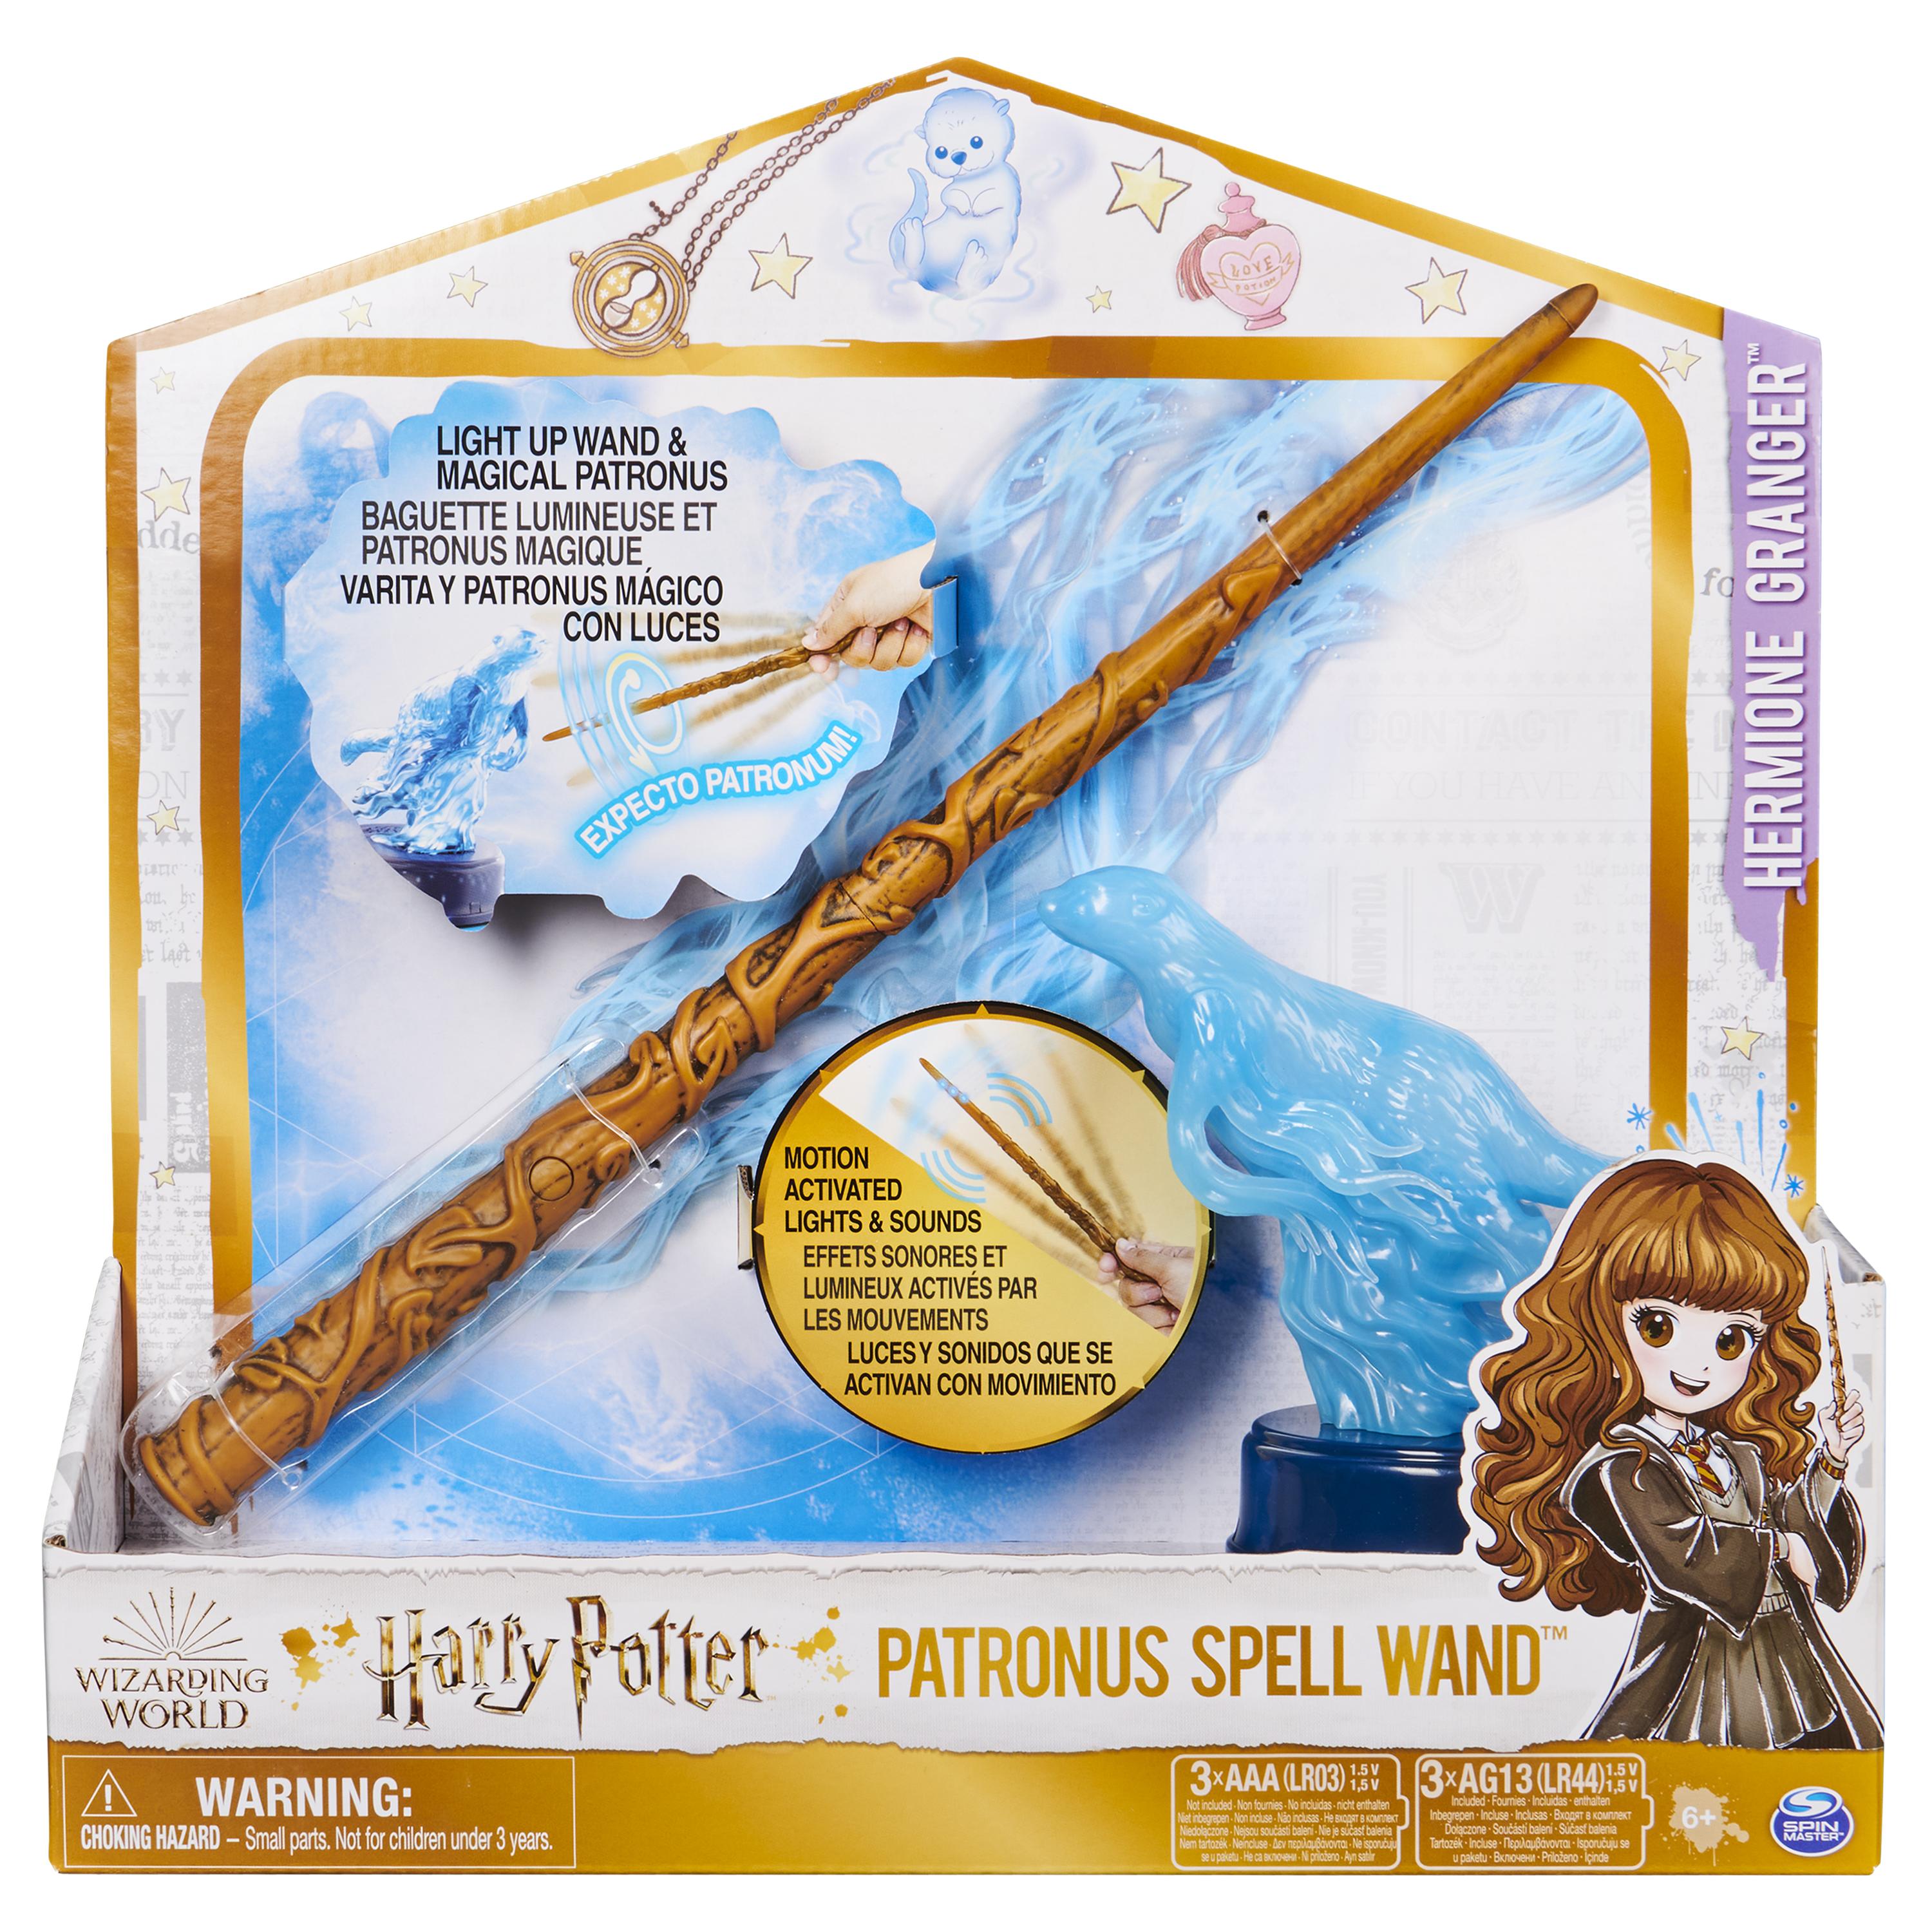 Support baguette Harry Potter (Jusqu'à 3 baguettes) – Accessoires-Figurines